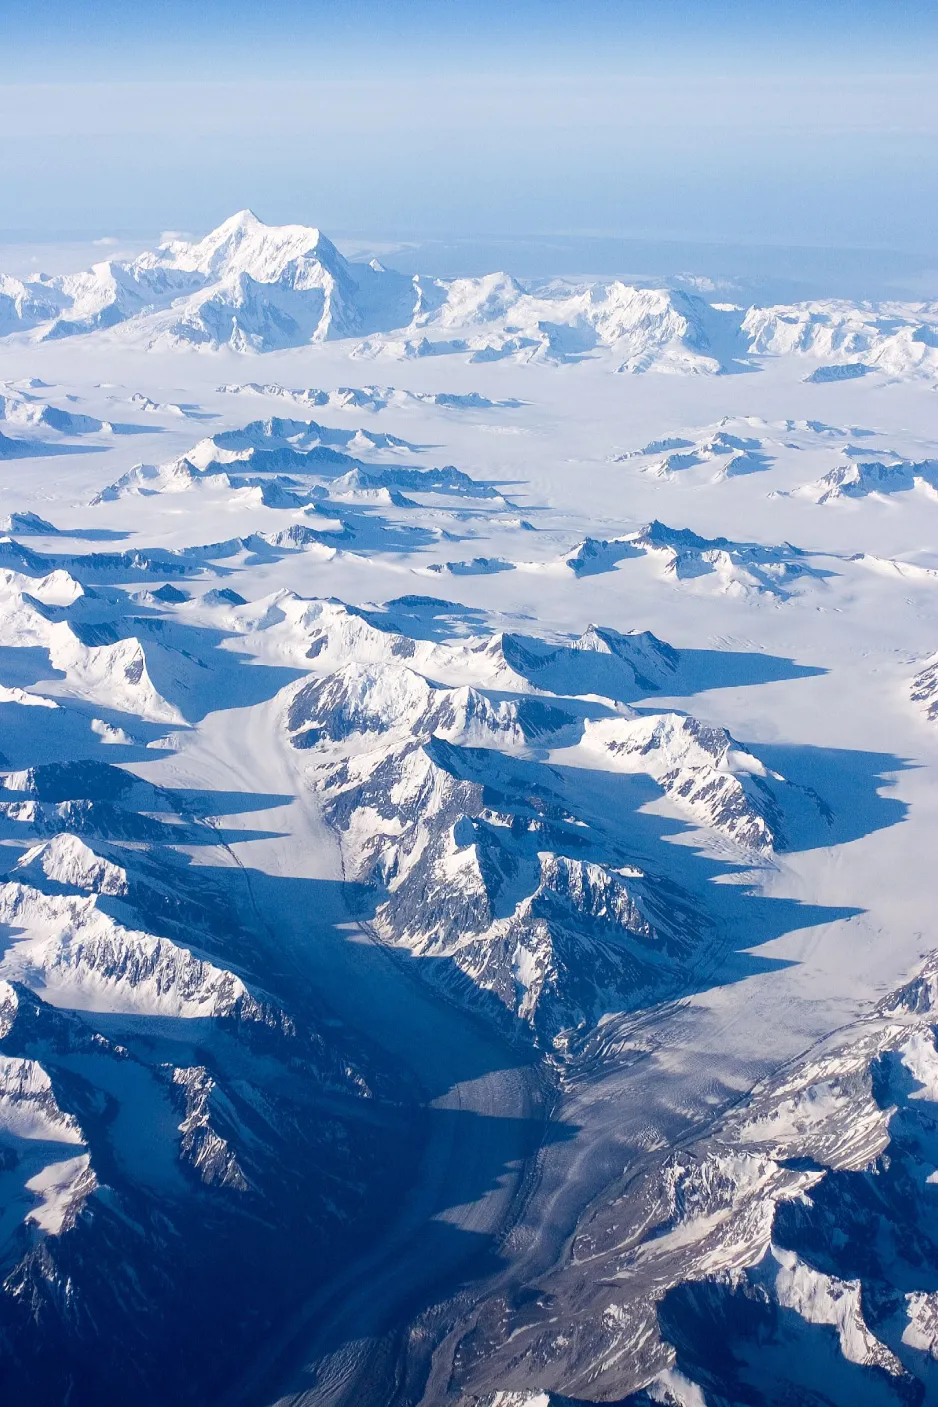 Une photo prise d’un avion à 10 975 mètres (36 000 pieds) d’altitude montre la chaîne de montagnes Saint-Élie couverte de neige.